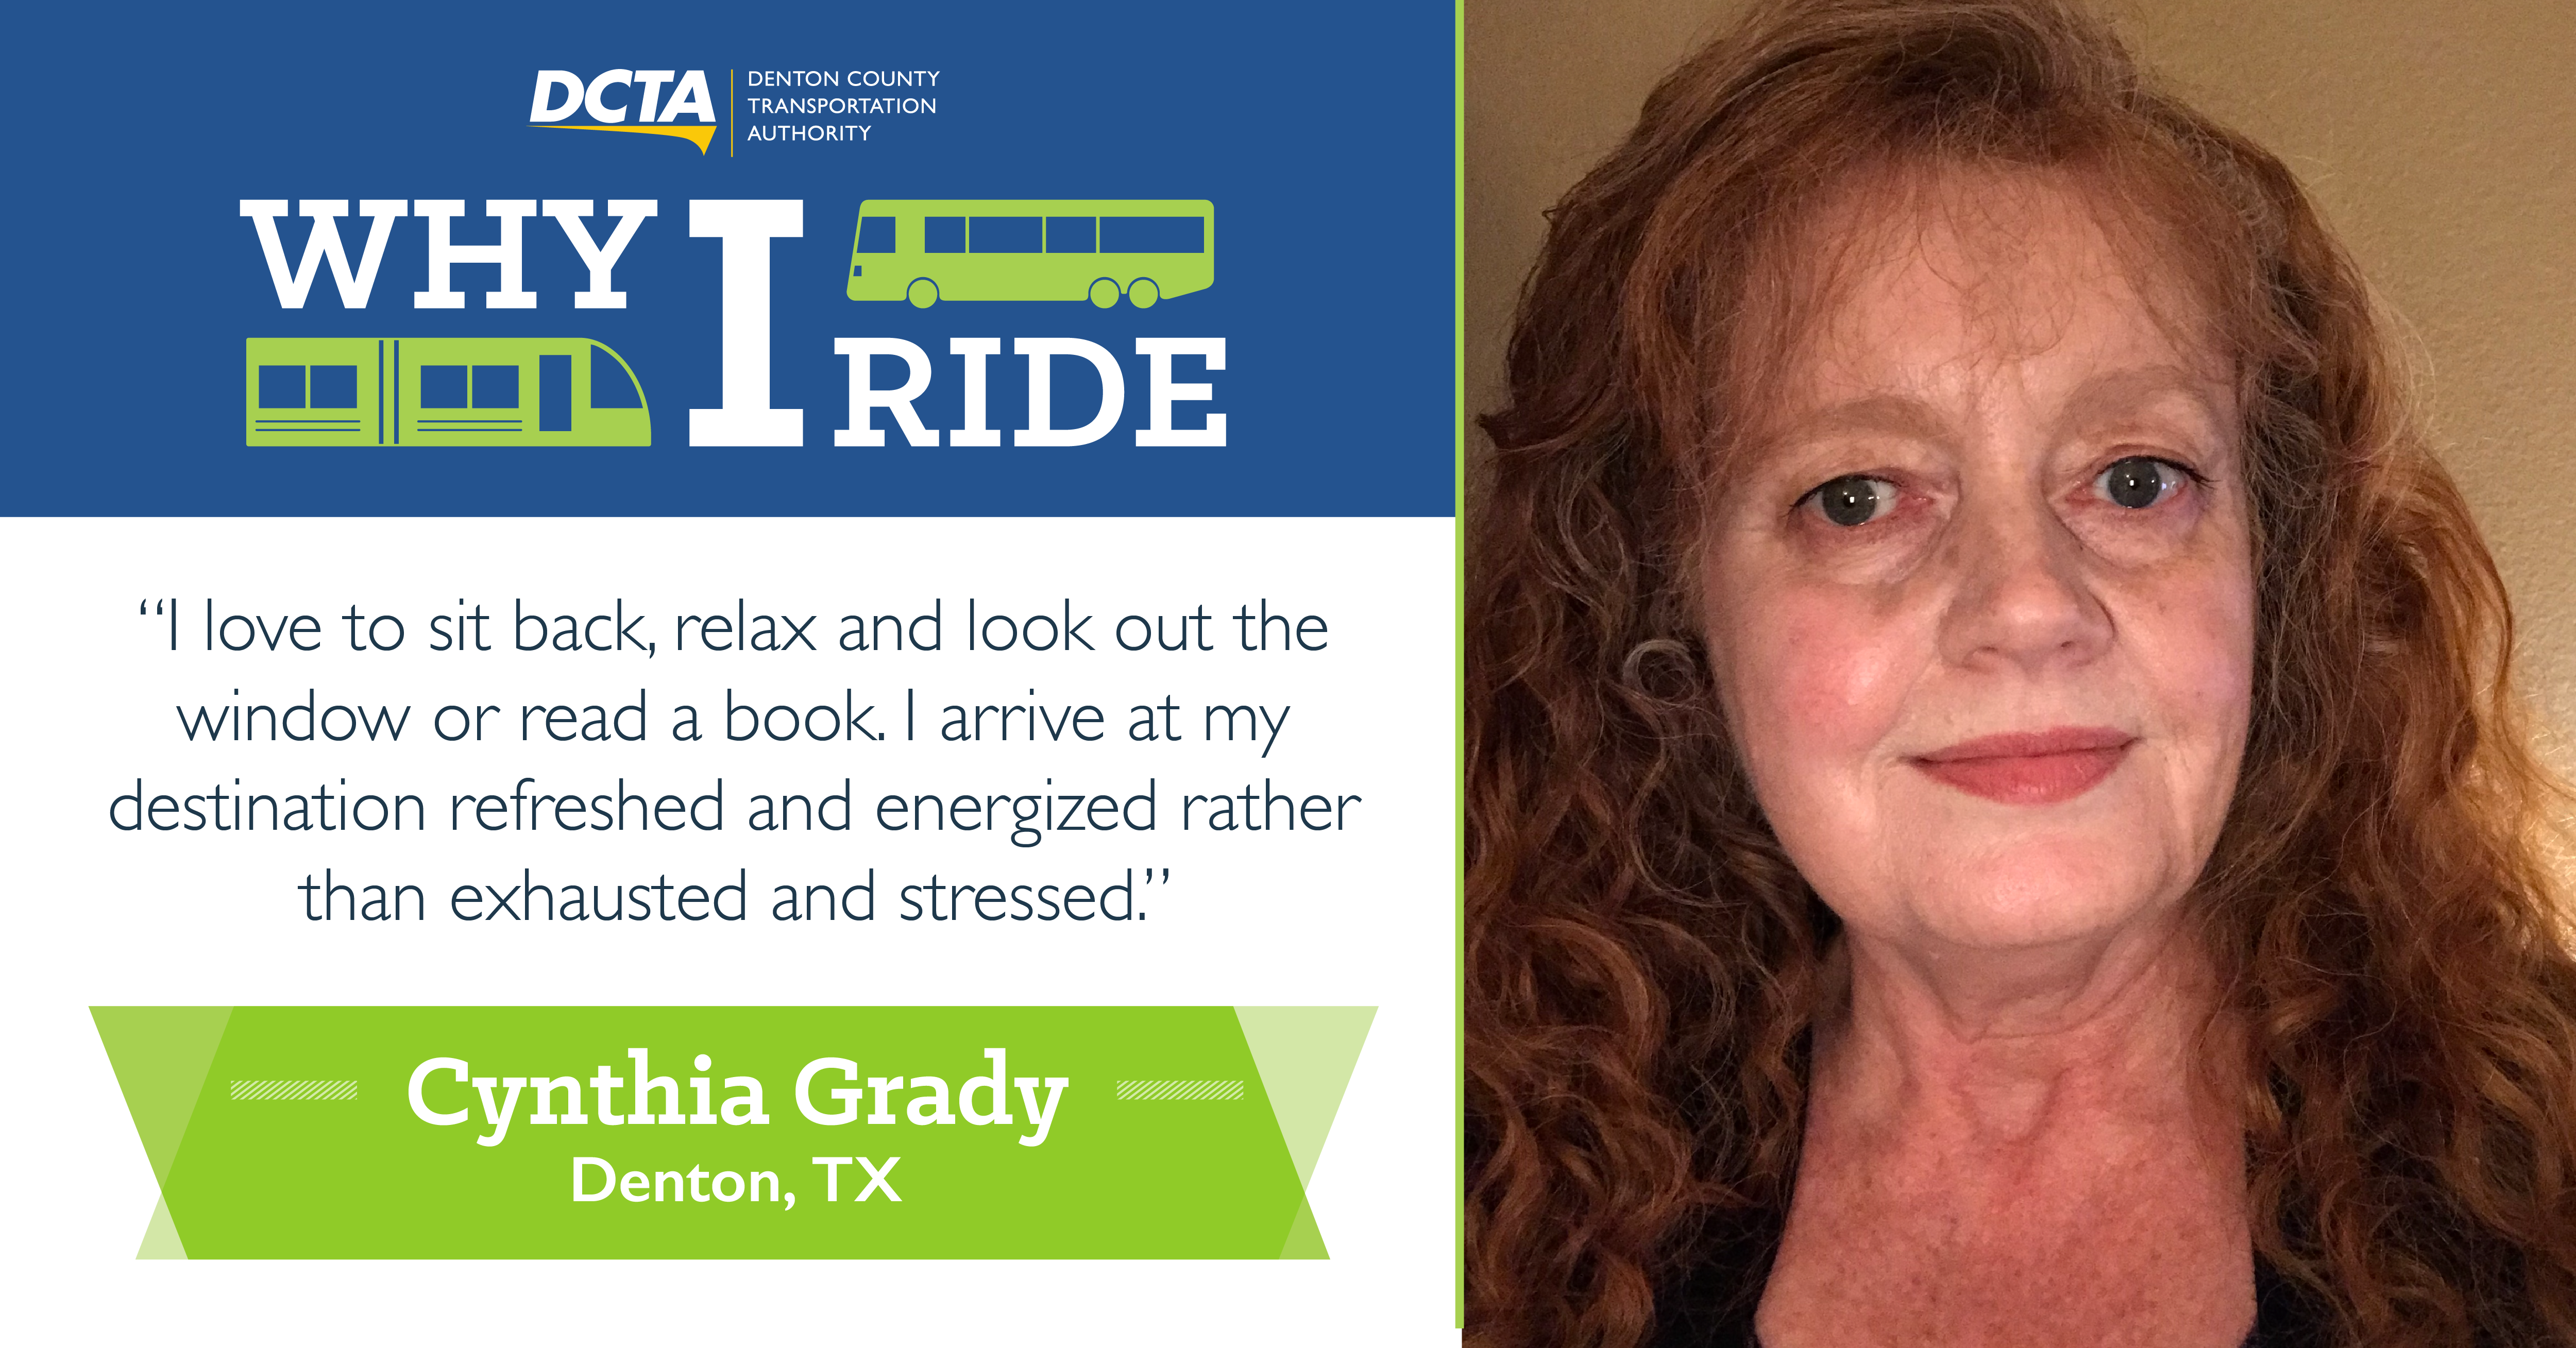 #WhyIRideDCTA: Cynthia Grady